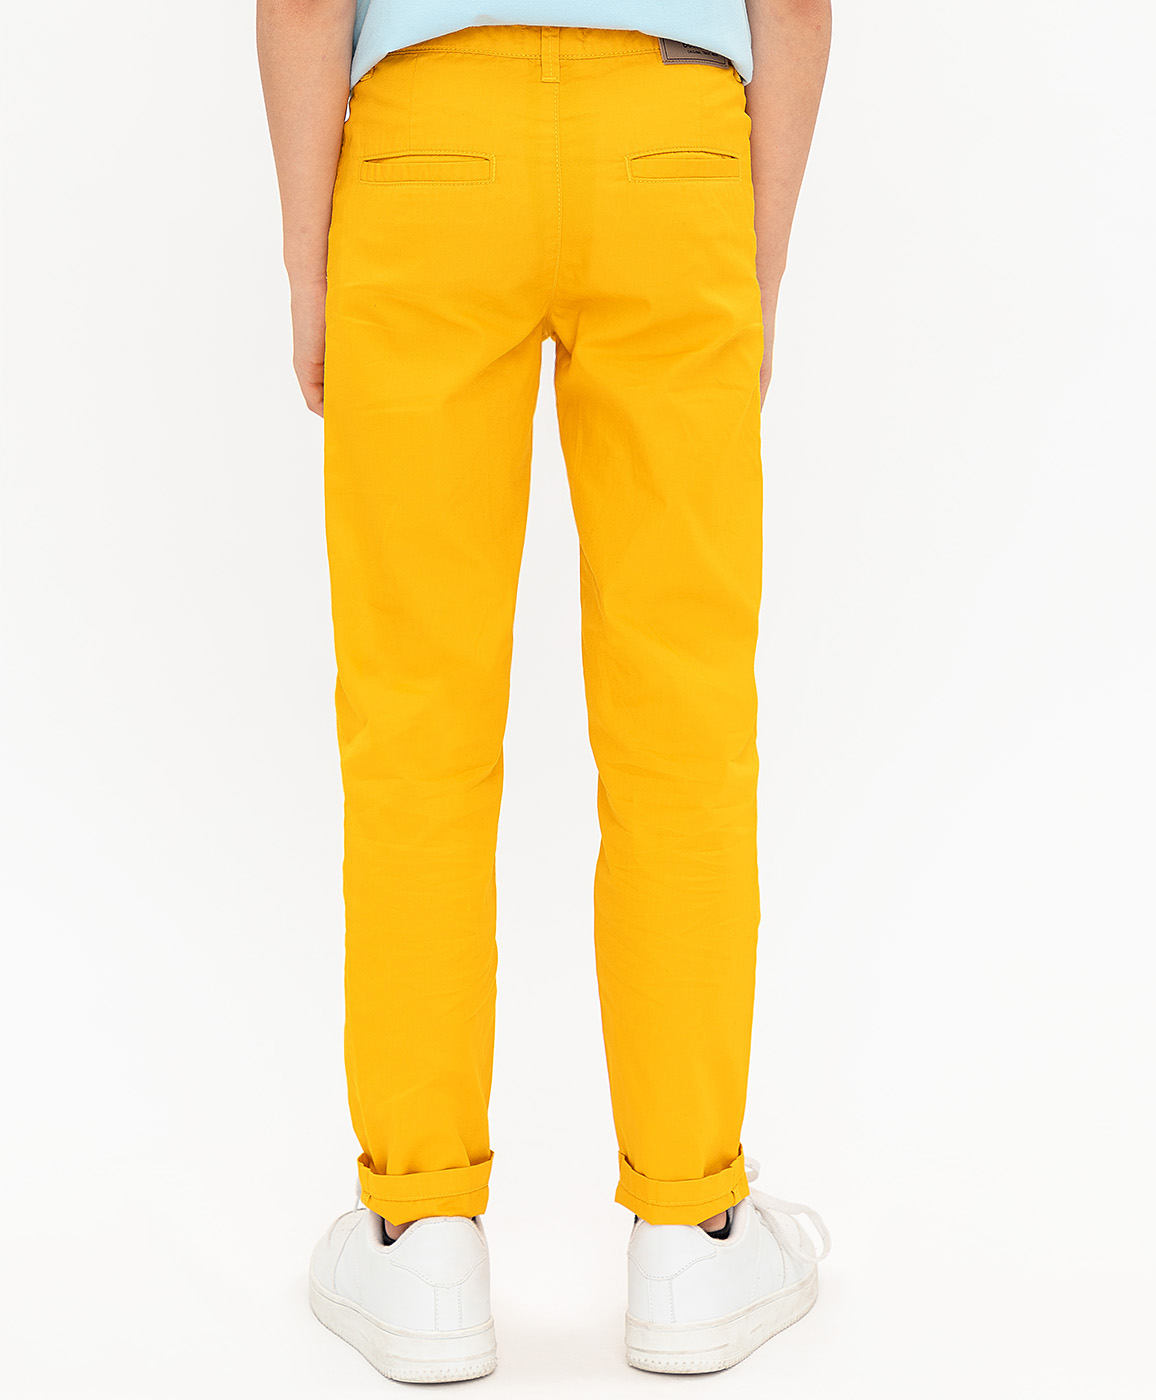 Игра желтые штаны. Желтые брюки на мальчика. Желтые брюки. Желтые штаны для мальчика. Желтые брюки для мальчика 134.